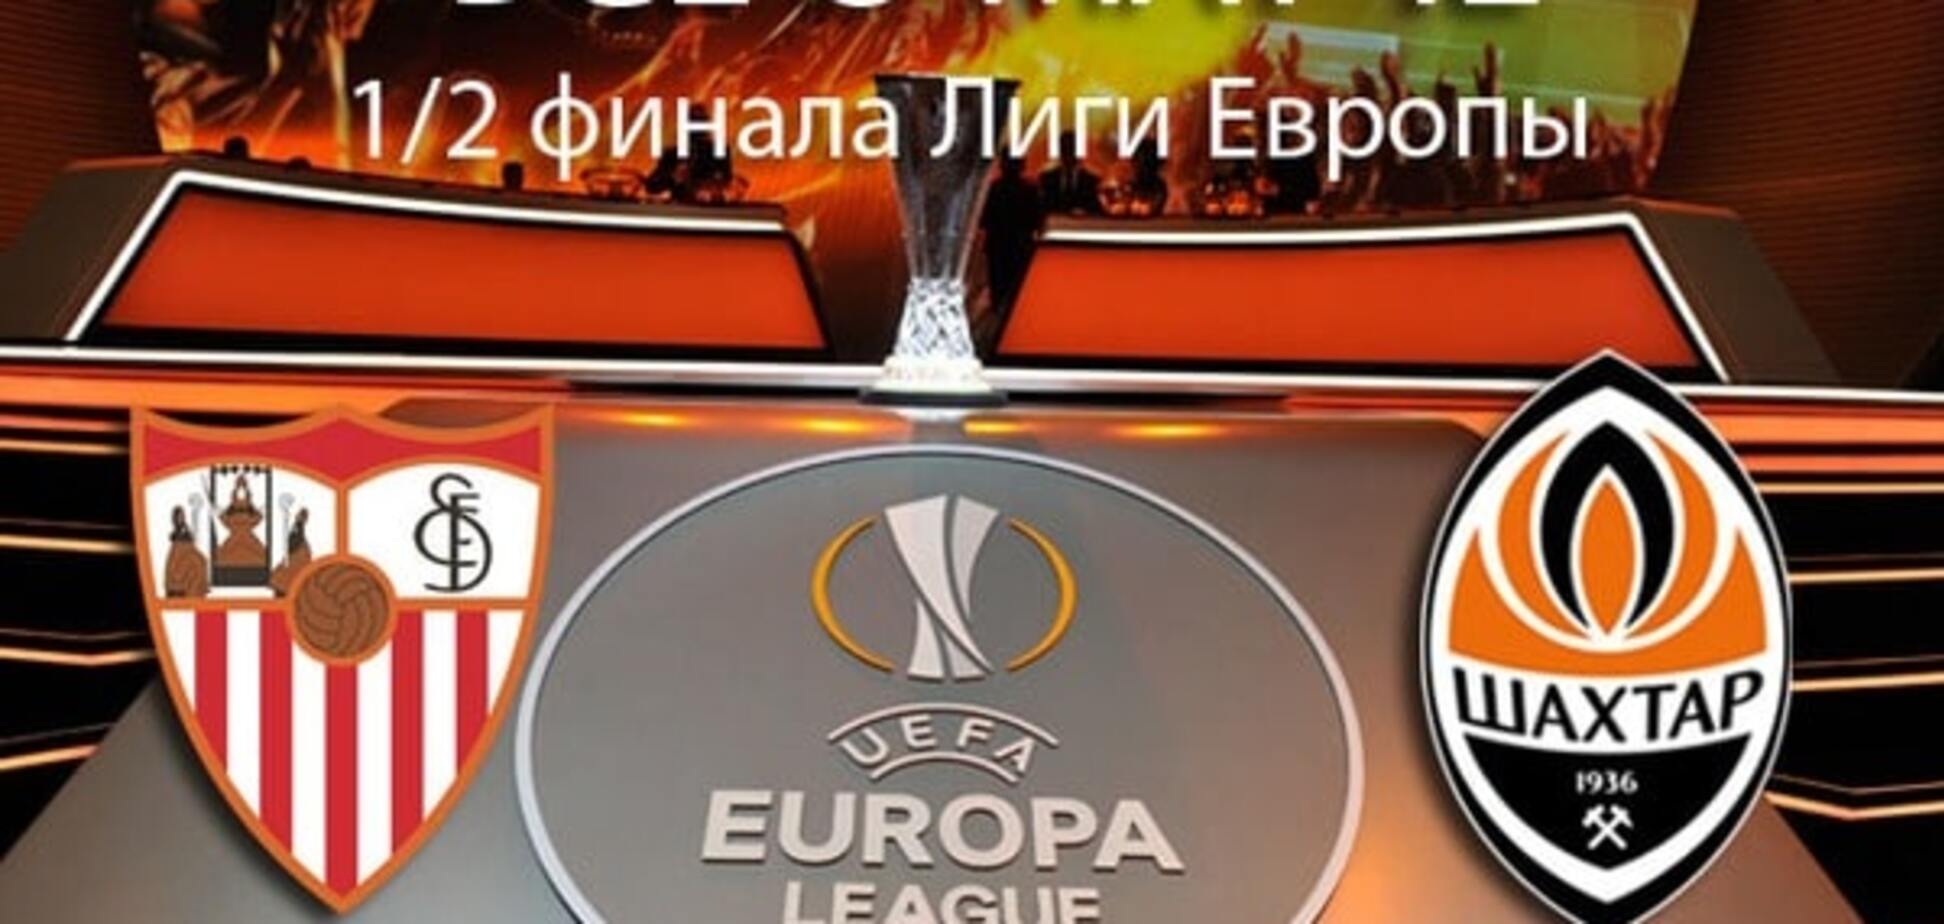 'Севілья' - 'Шахтар': анонс, прогноз, де дивитися матч 1/2 фіналу Ліги Європи